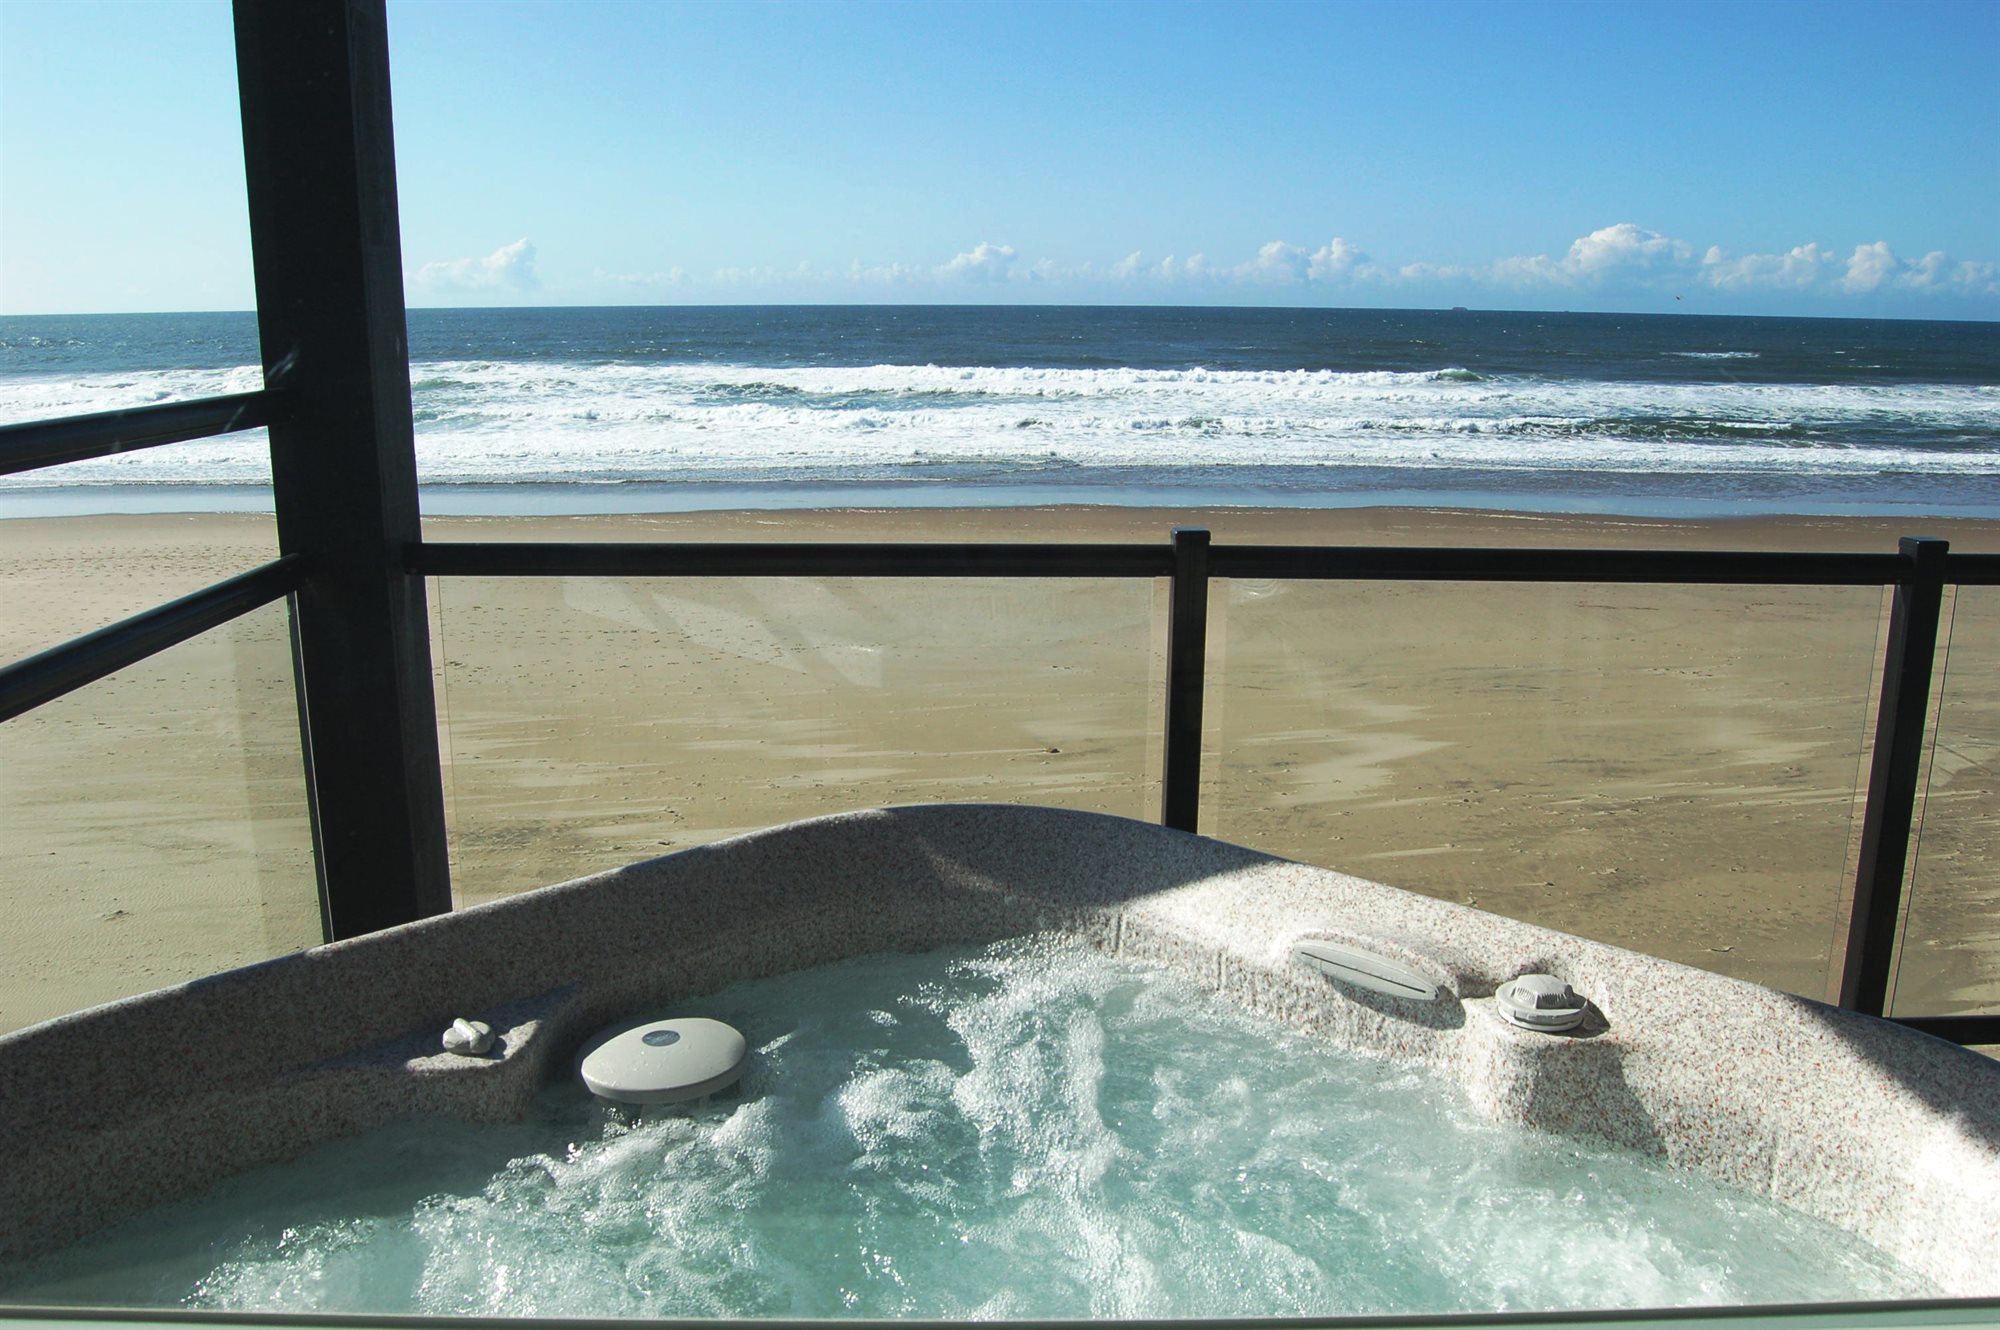 Oregon Coast Hotels With Hot Tubs On Balcony Image